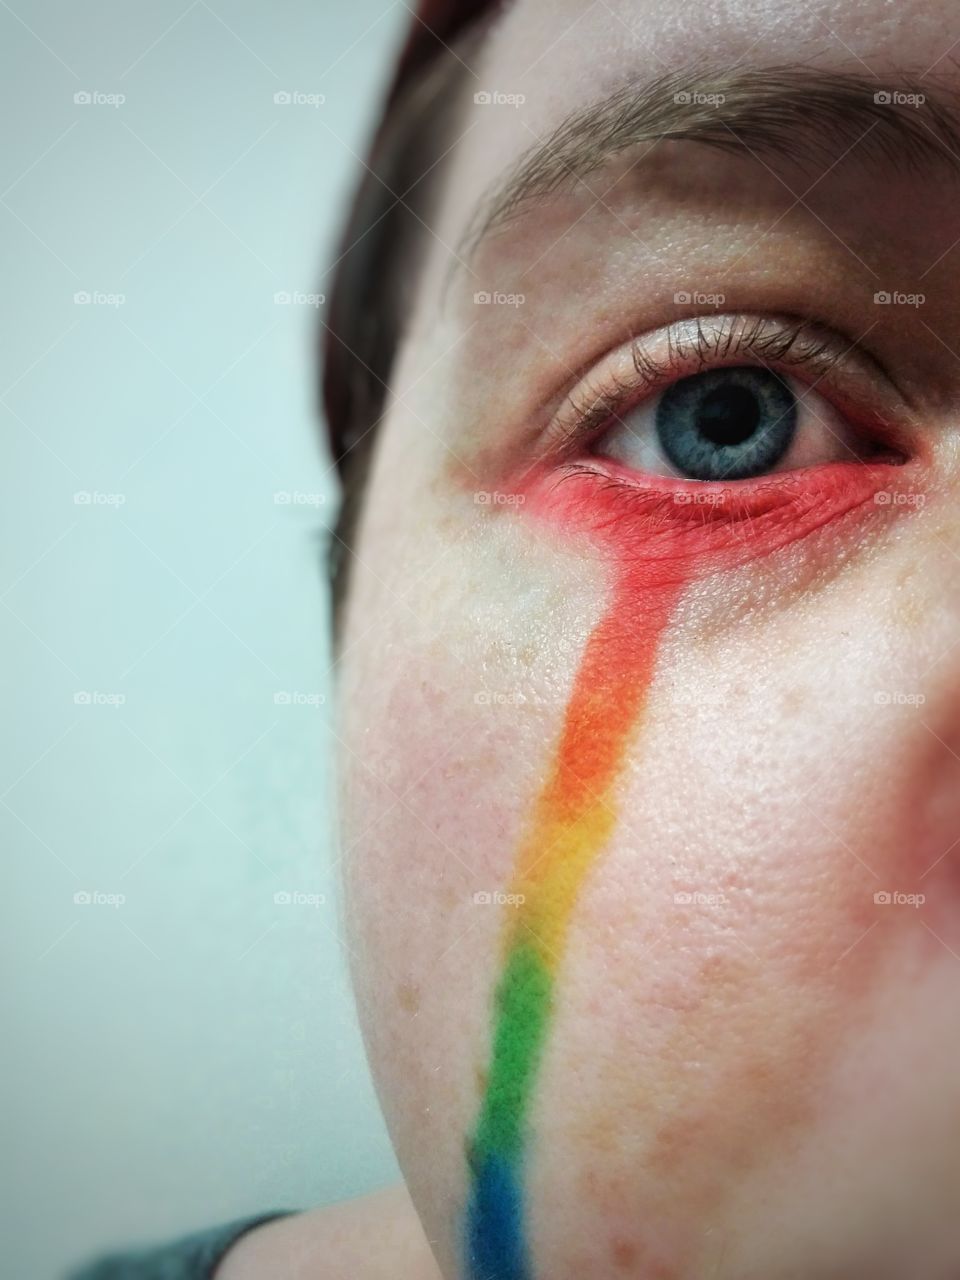 Rainbow tear close up